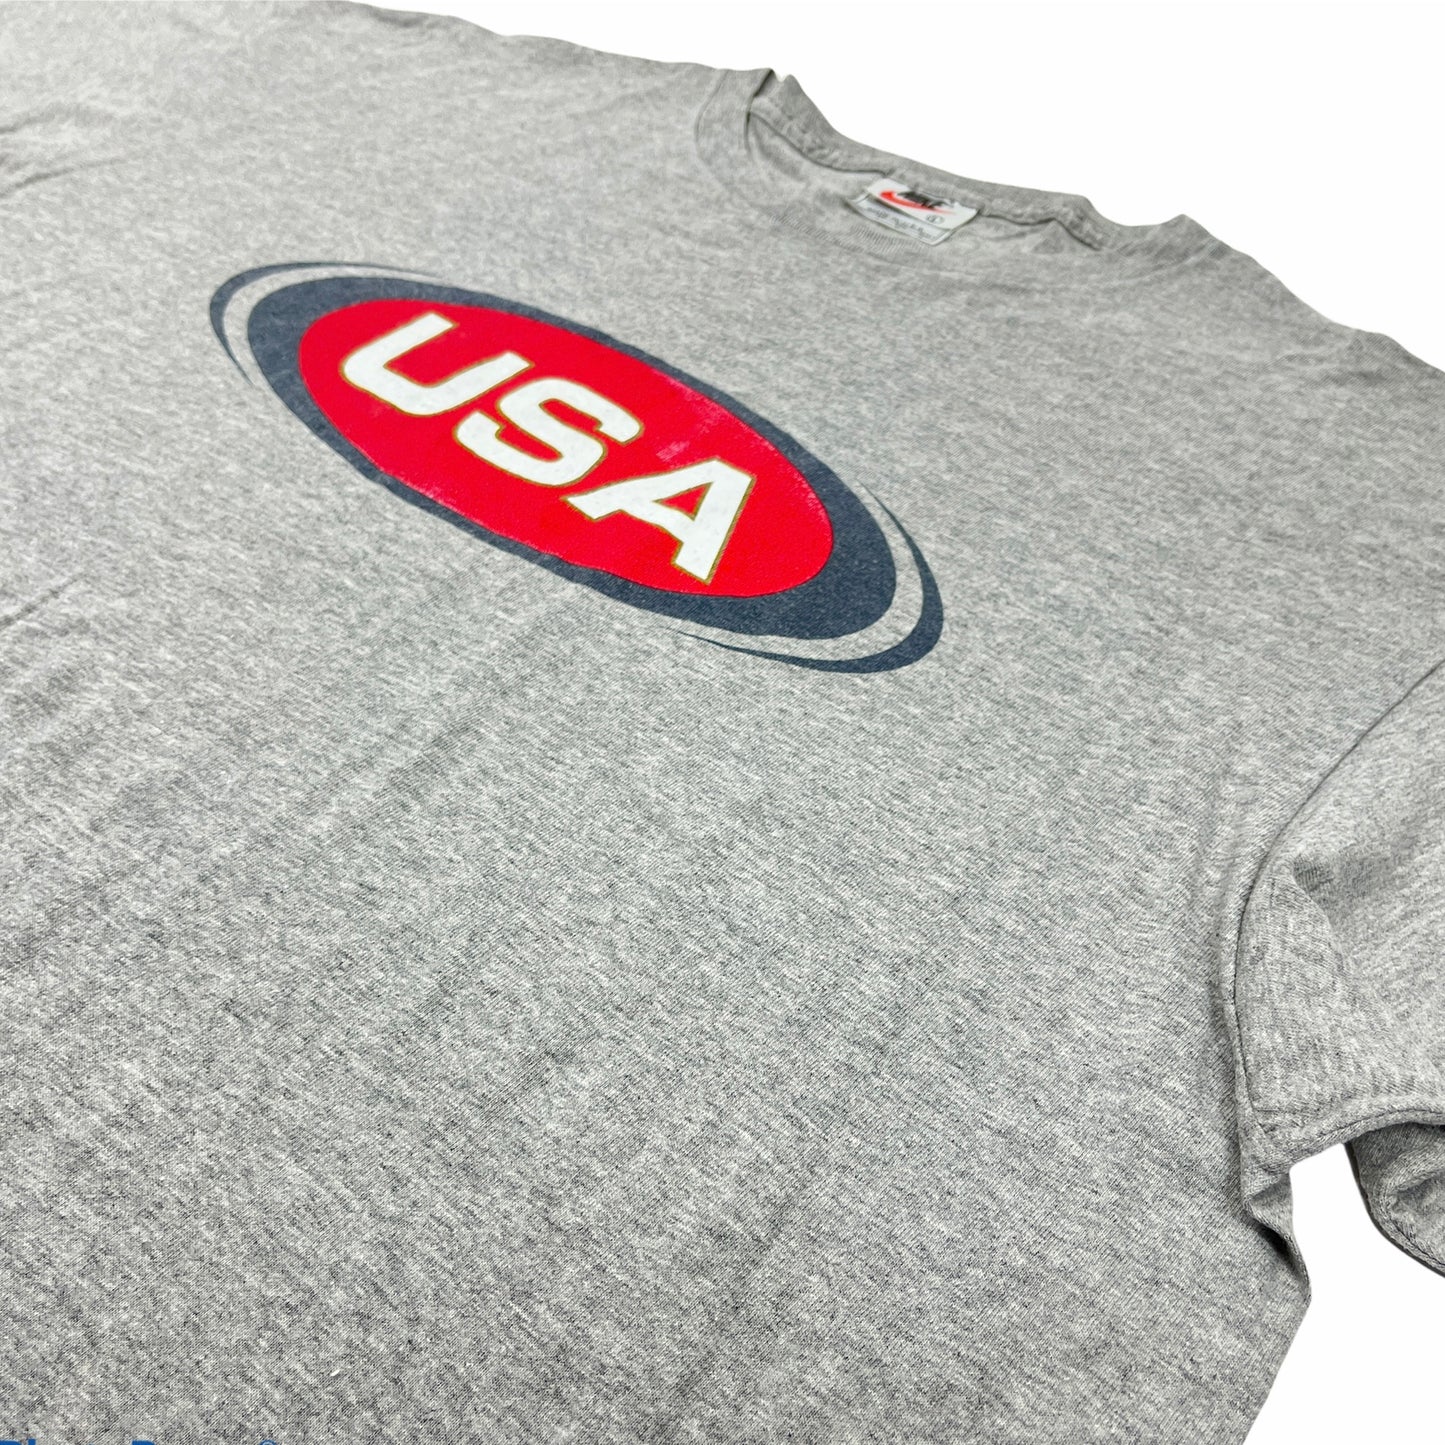 0700 Nike Vintage USA Tshirt